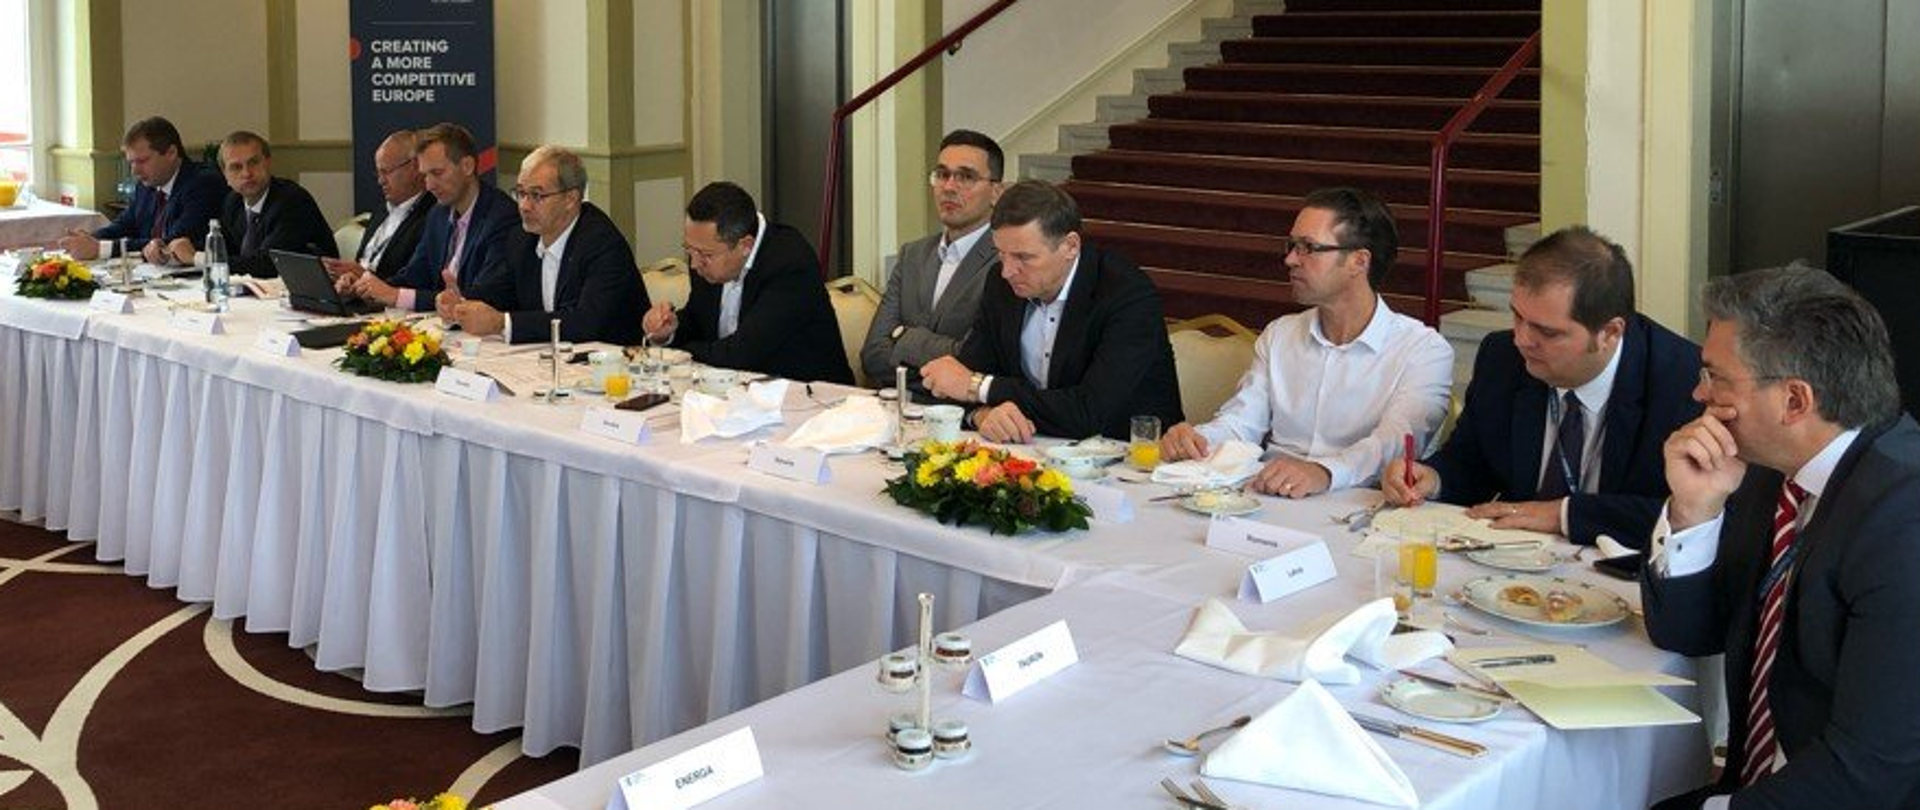 W sali przy stole w kształcie litery L przykrytym białym obrusem siedzą mężczyźni. Wśród nich minister Jerzy Kwieciński.